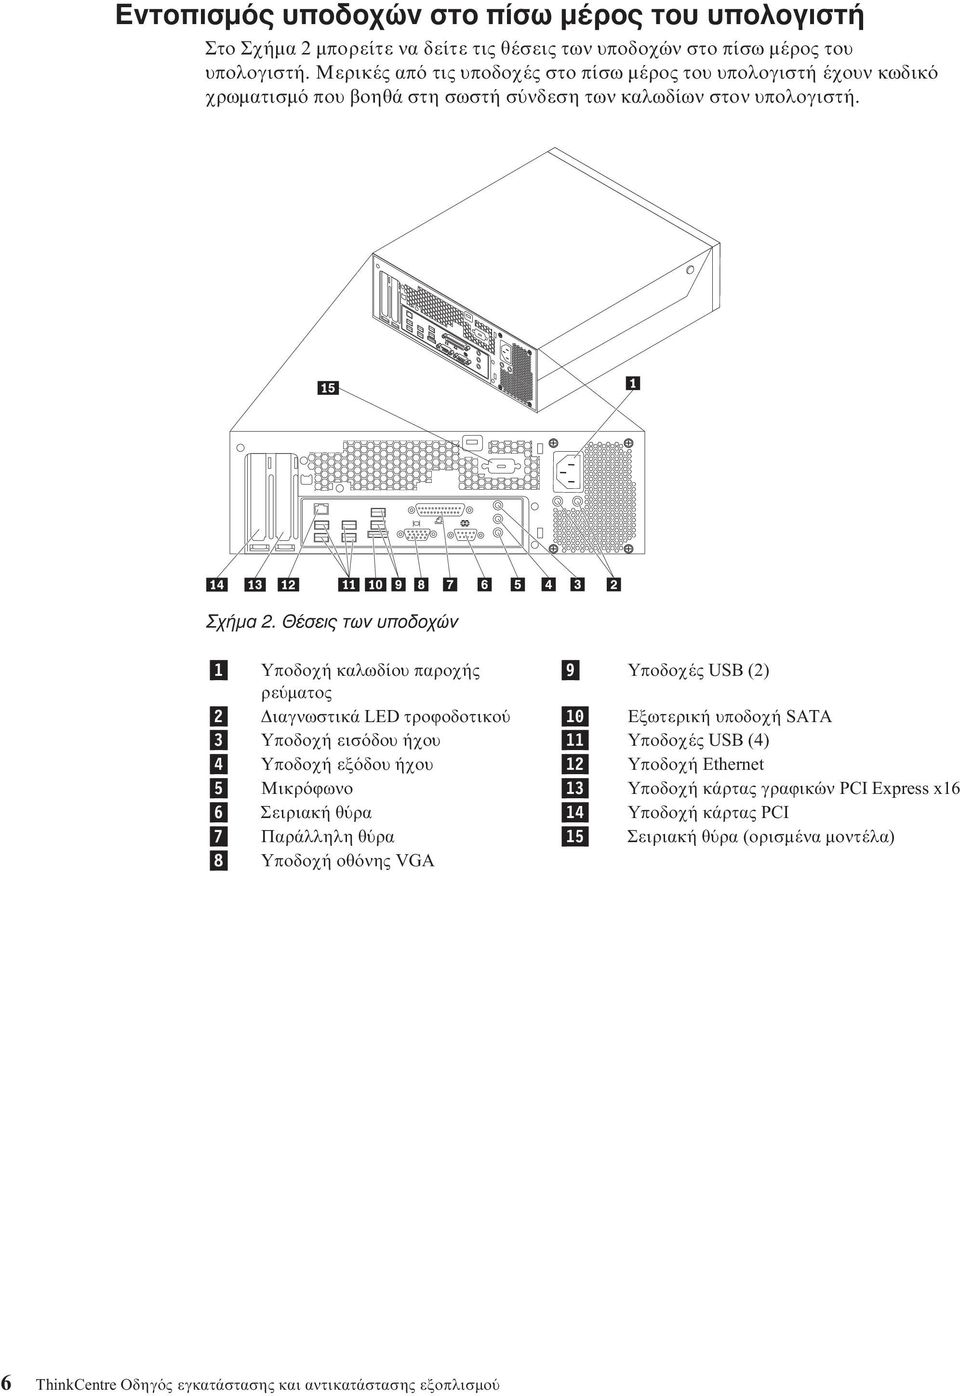 Θέσεις των υποδοχών 1 Υποδοχή καλωδίου παροχής 9 Υποδοχές USB (2) ρε µατος 2 ιαγνωστικά LED τροϕοδοτικο 10 Εξωτερική υποδοχή SATA 3 Υποδοχή εισ δου ήχου 11 Υποδοχές USB (4) 4